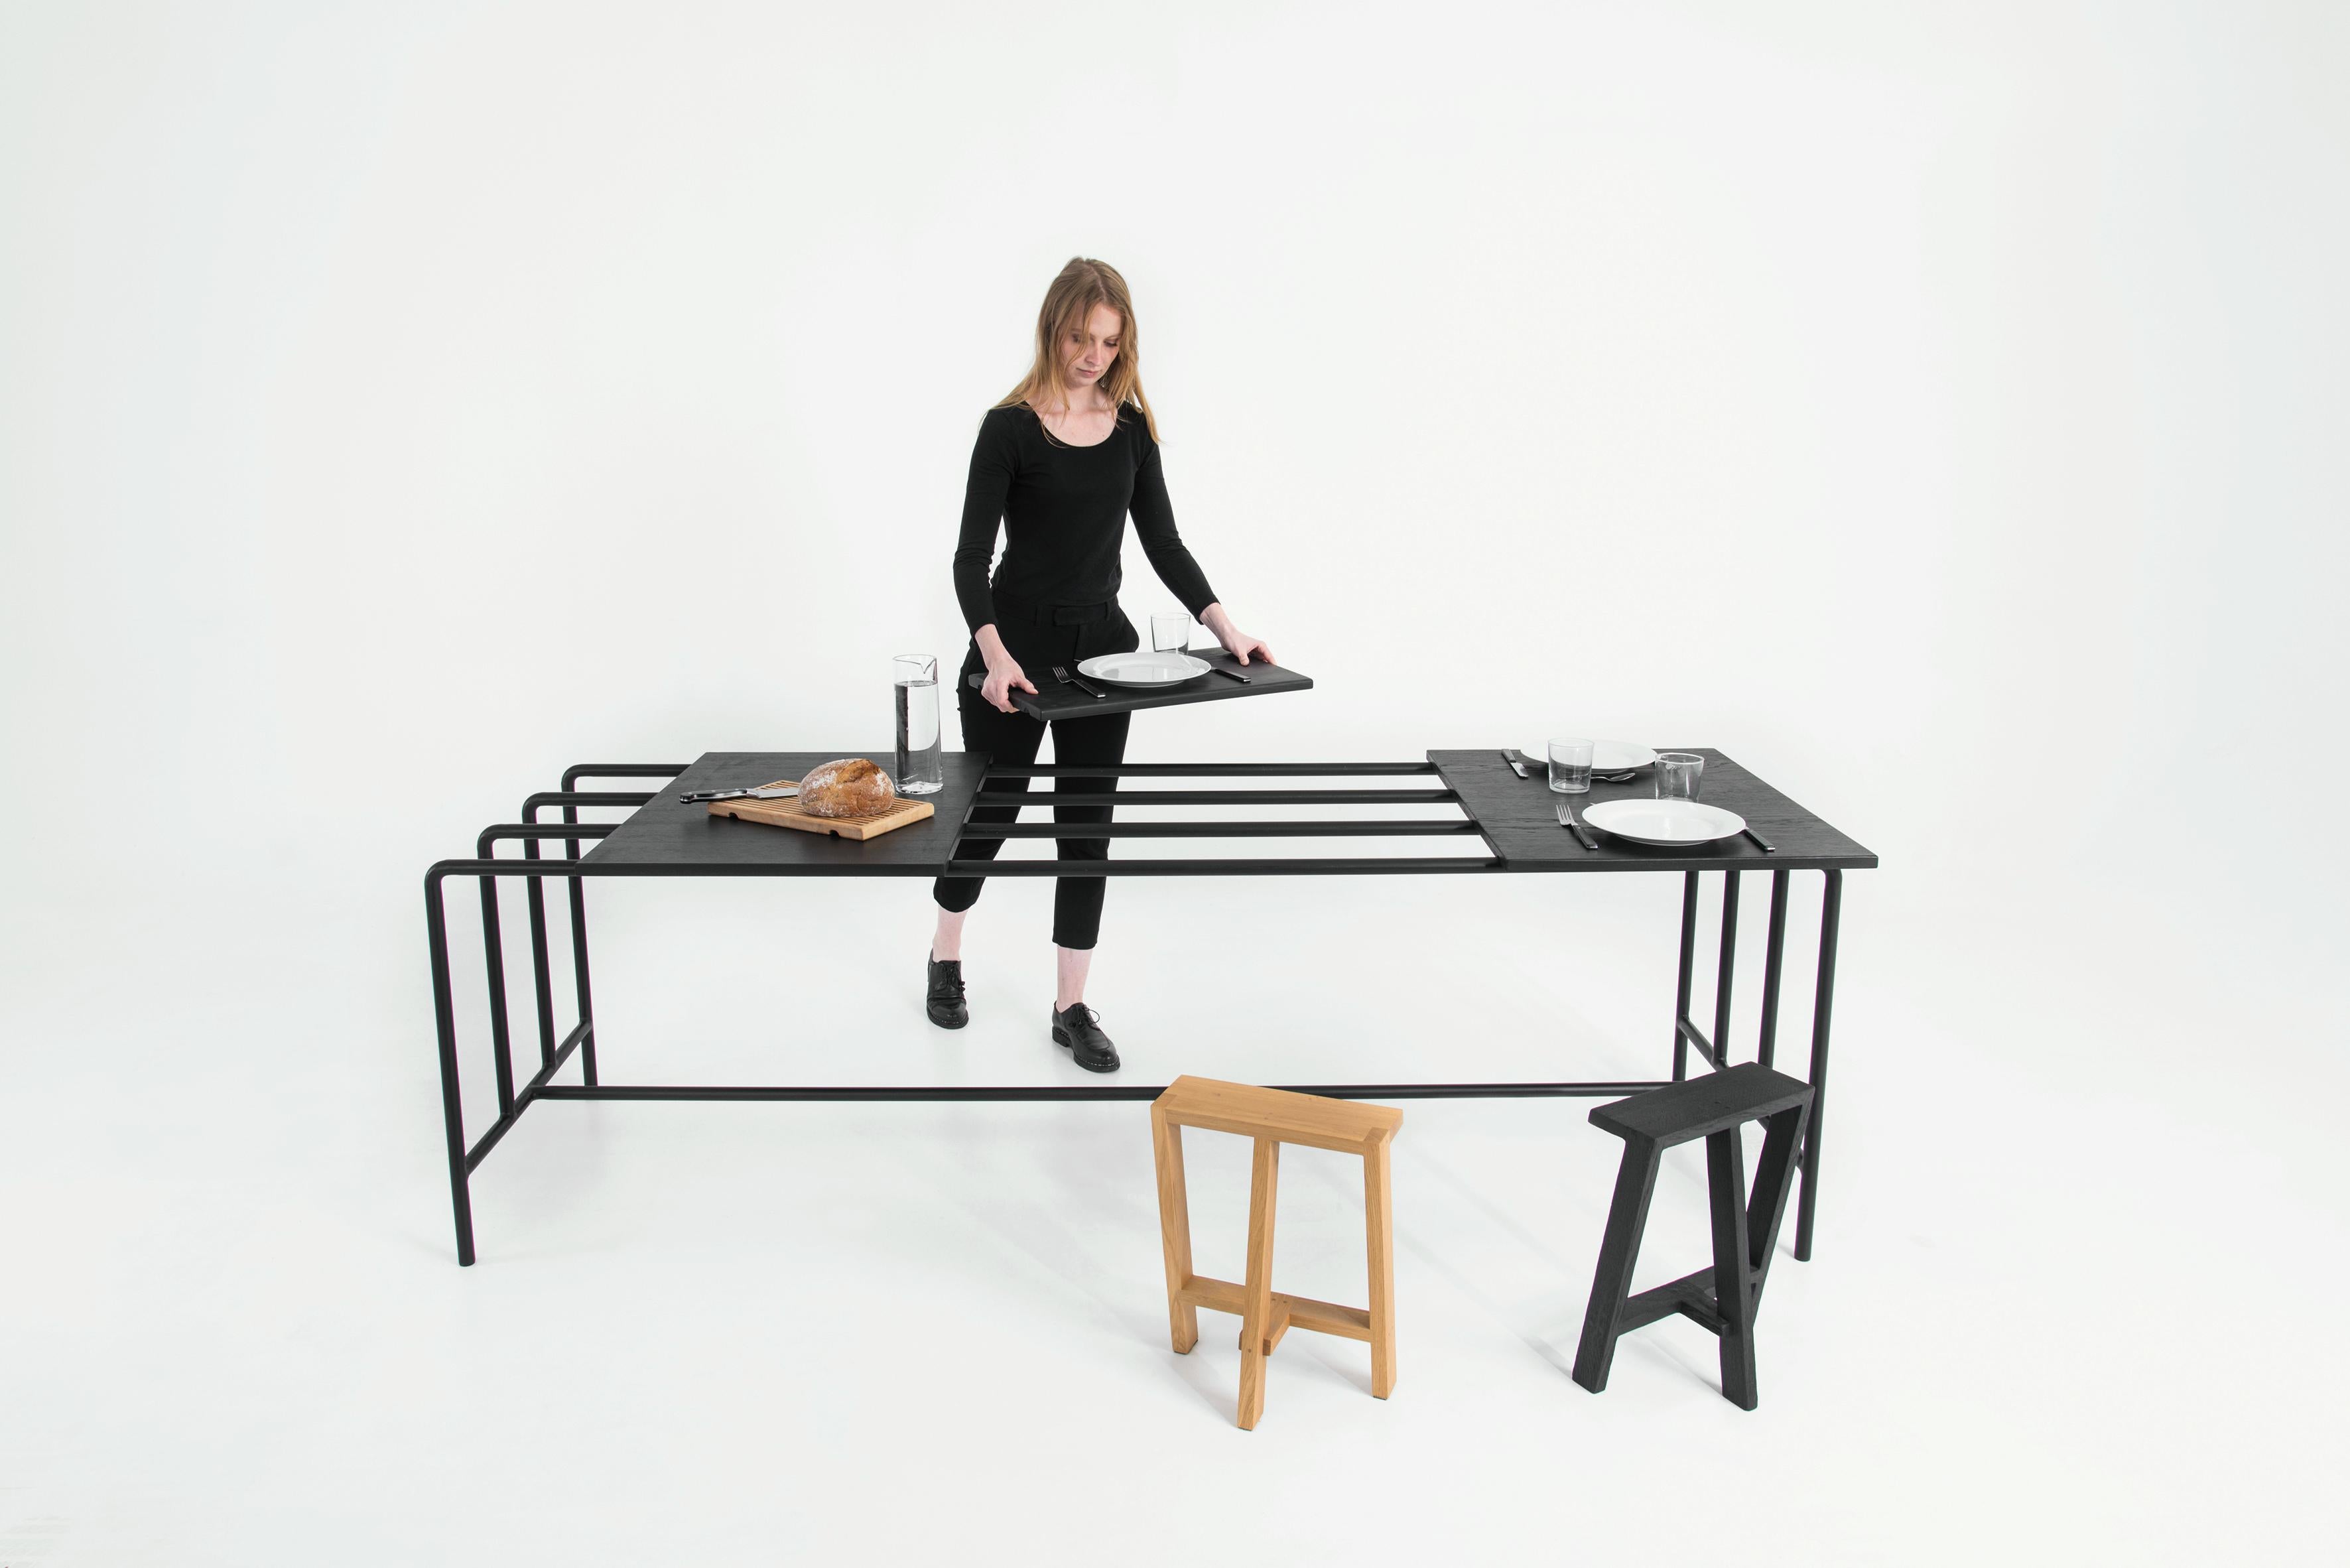 Steel Abacus Table by Pierre-Emmanuel Vandeputte